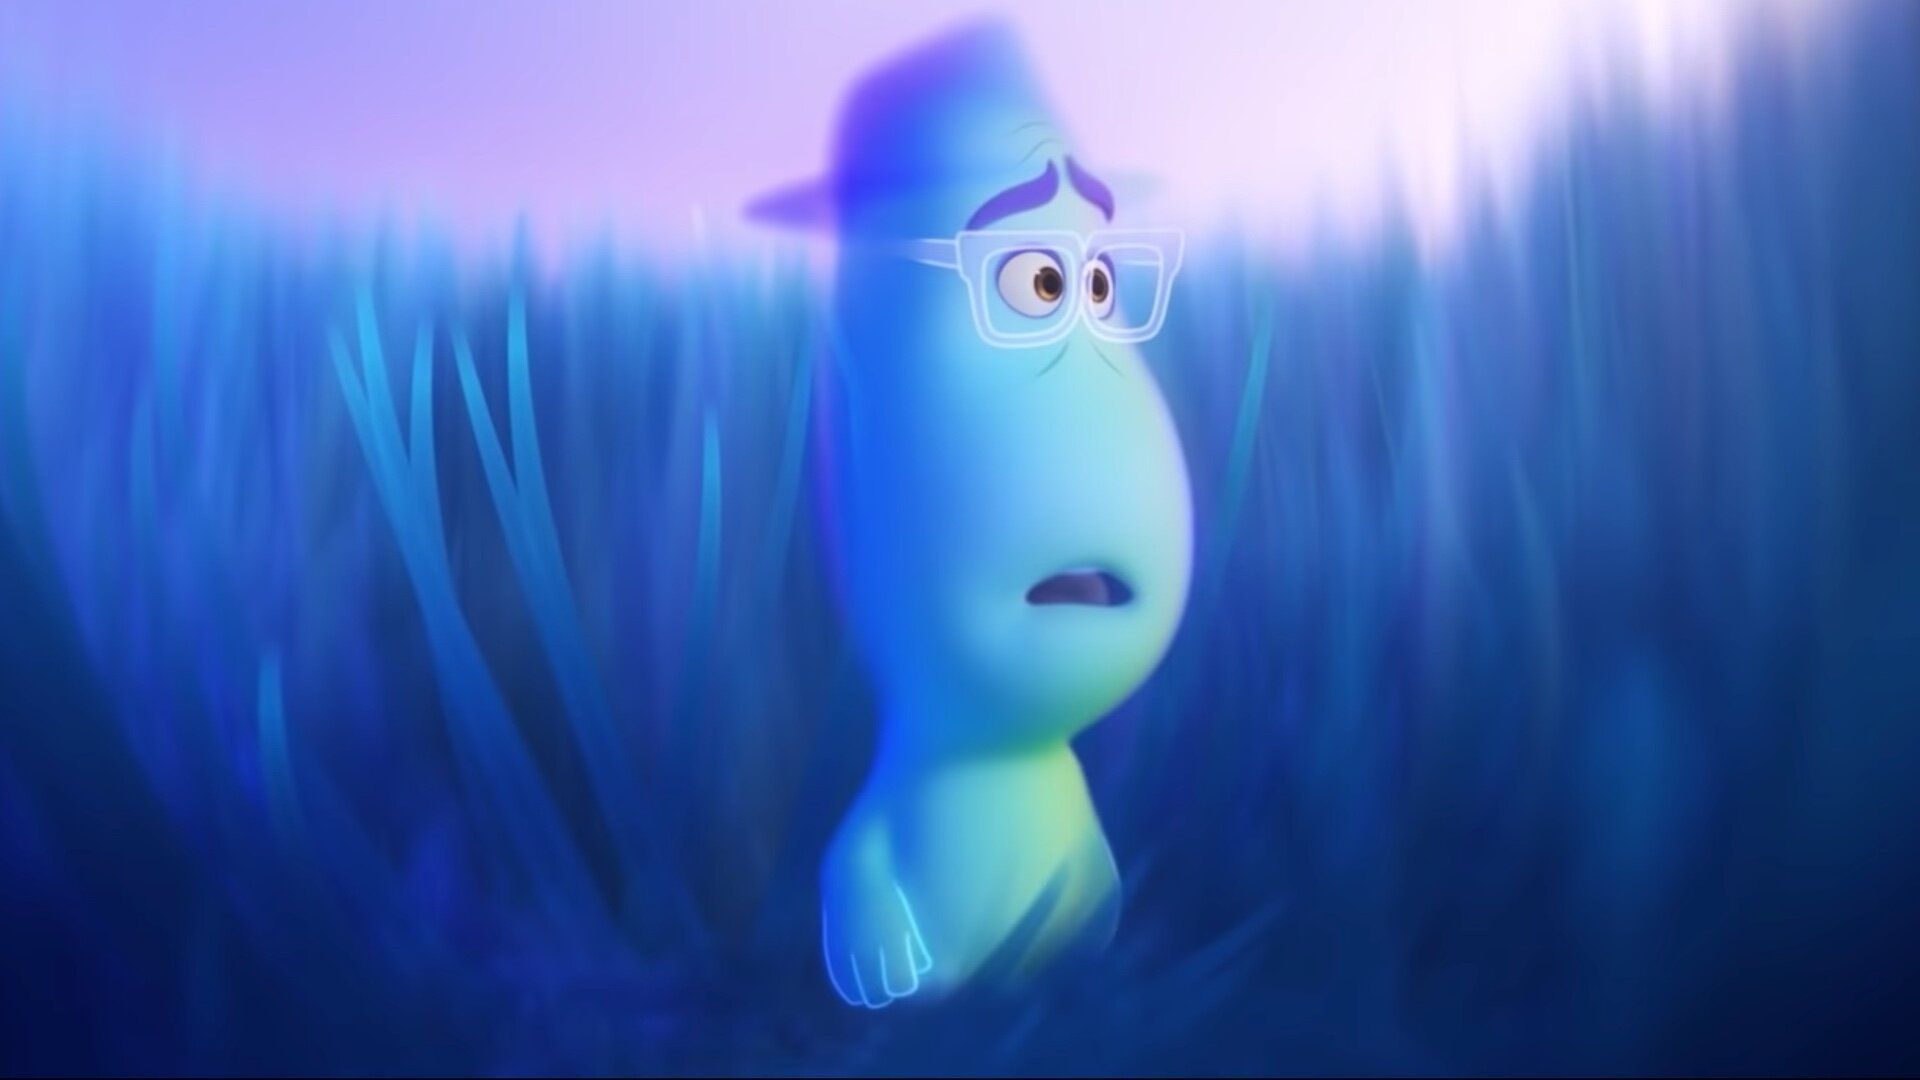 Pixar'S Soul Movie Wallpapers